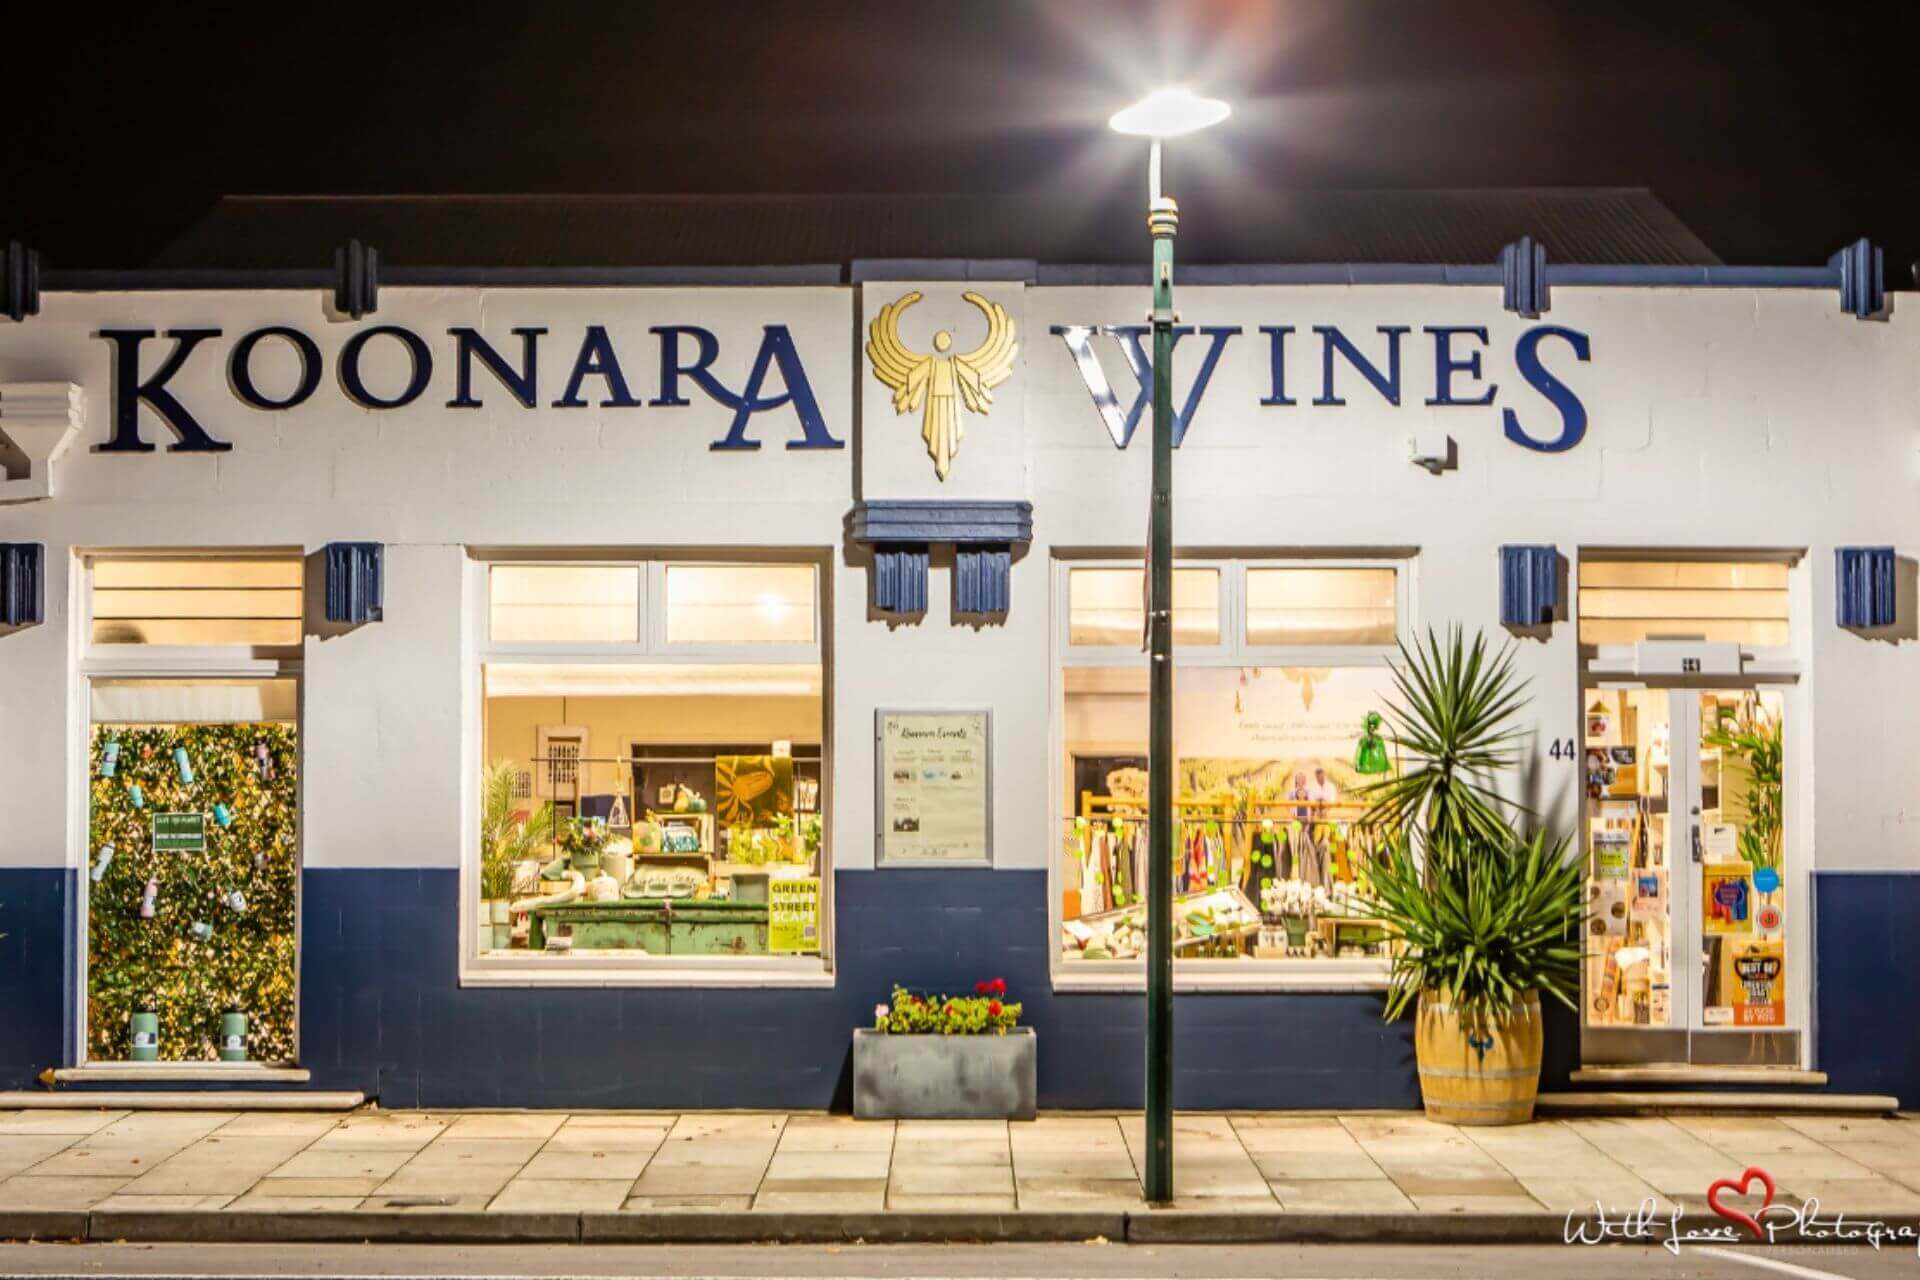 Koonara Wines Cellar Door shop front at night